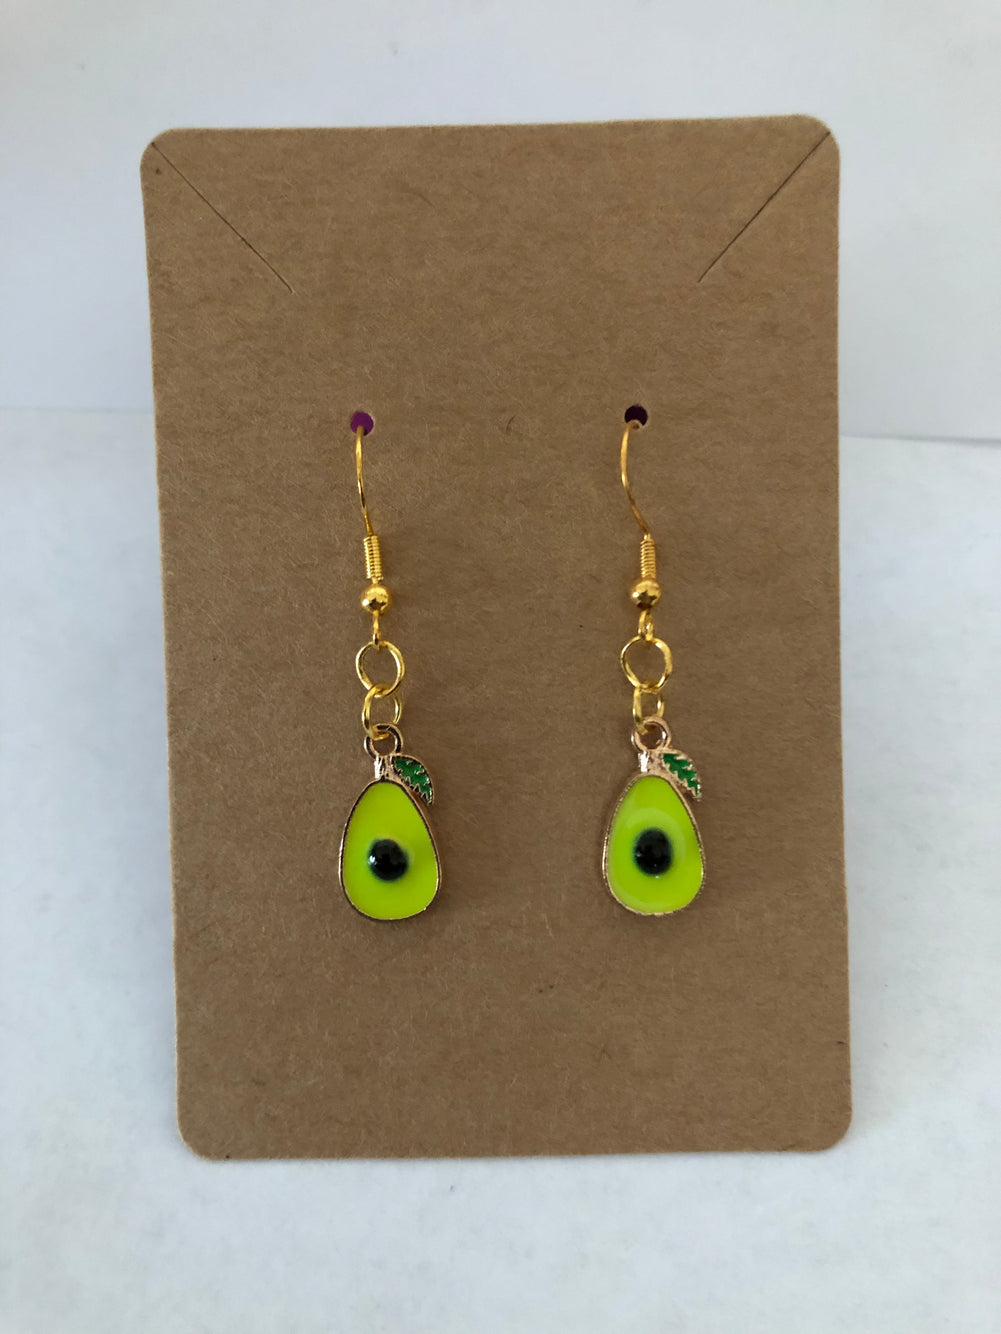 Avocado Aguacate earrings